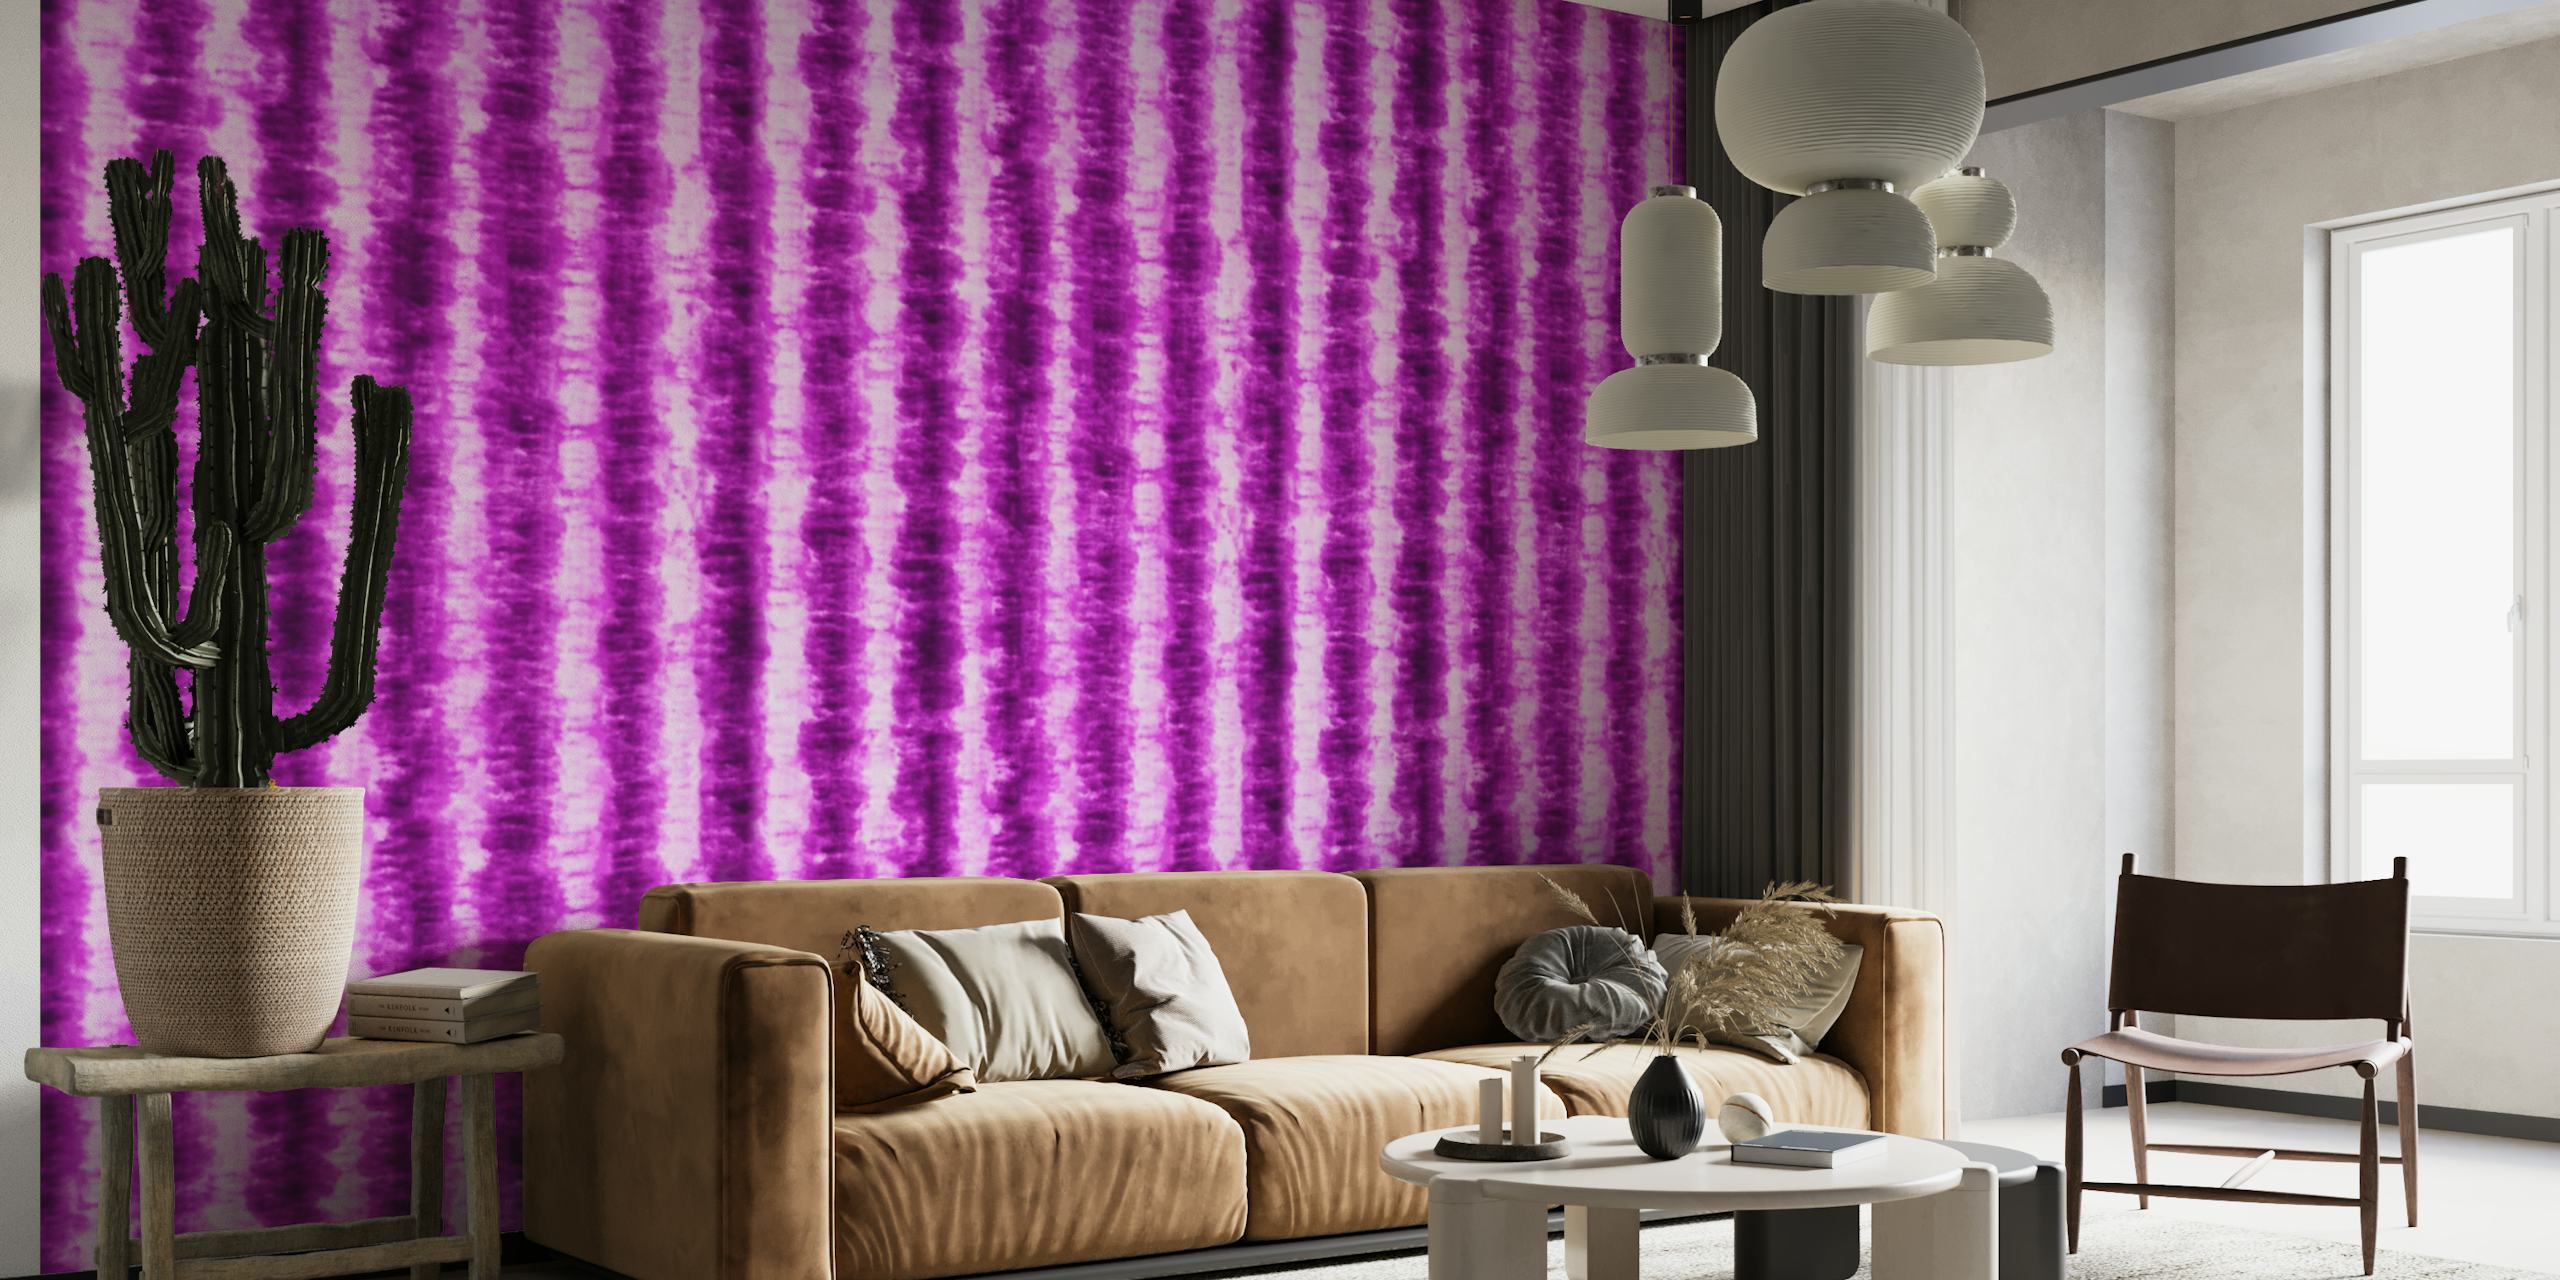 Zářivá fialová nástěnná malba s kravatovým vzorem od Happywall, ideální pro eklektické domácí dekorace.